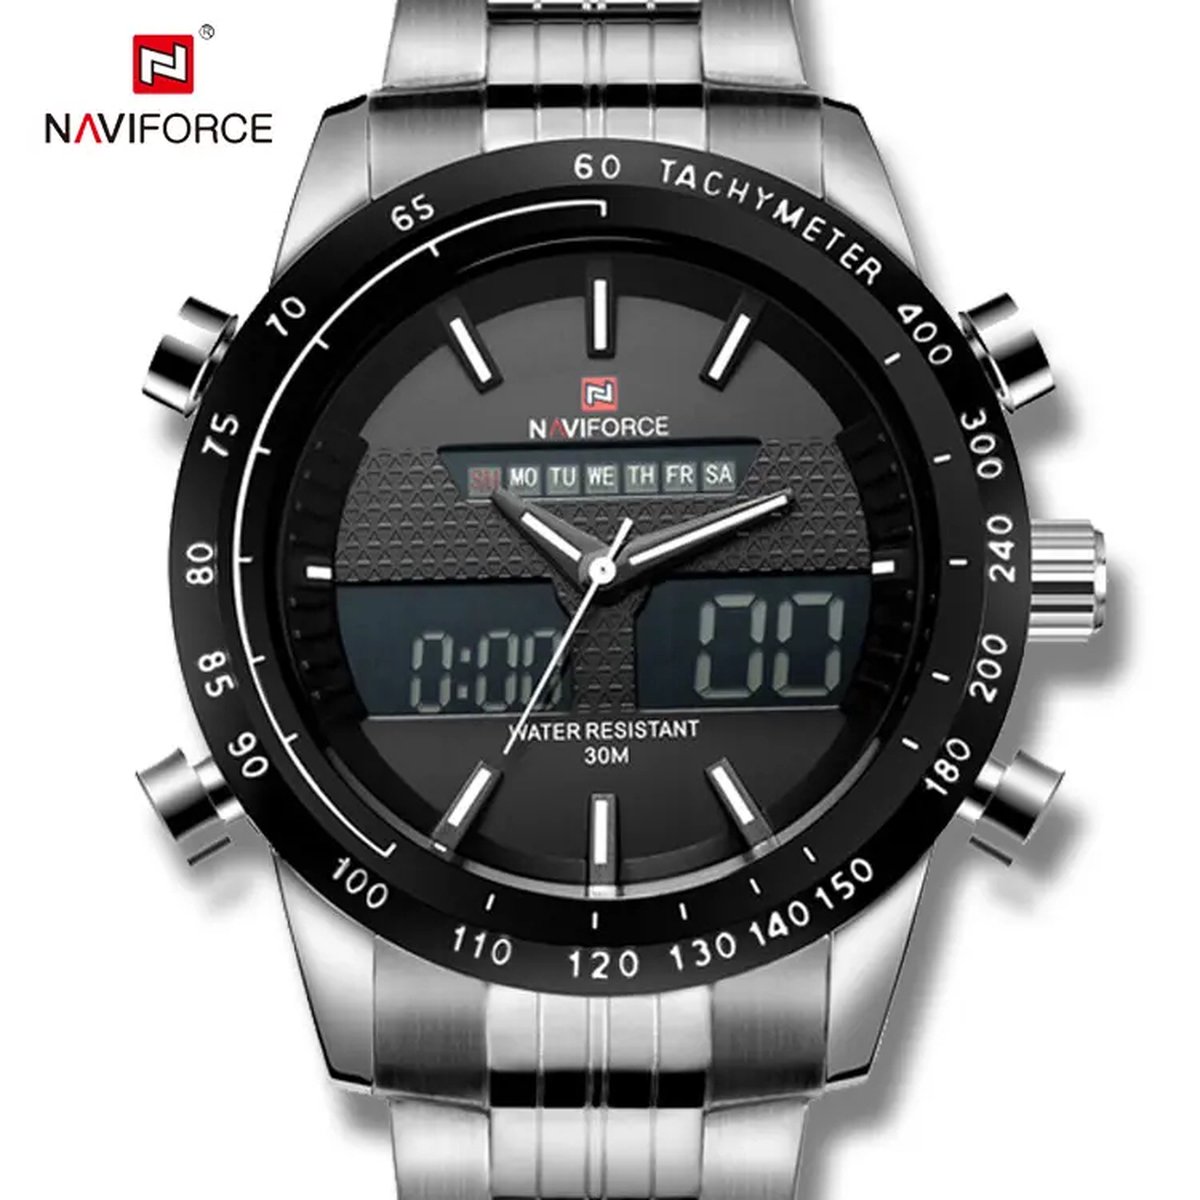 NAVIFORCE horloge voor mannen, met zilveren metalen polsband, zwarte uurwerkkast en zwarte wijzerplaat met witte wijzers ( model 9024 SBW ), verpakt in mooie geschenkdoos